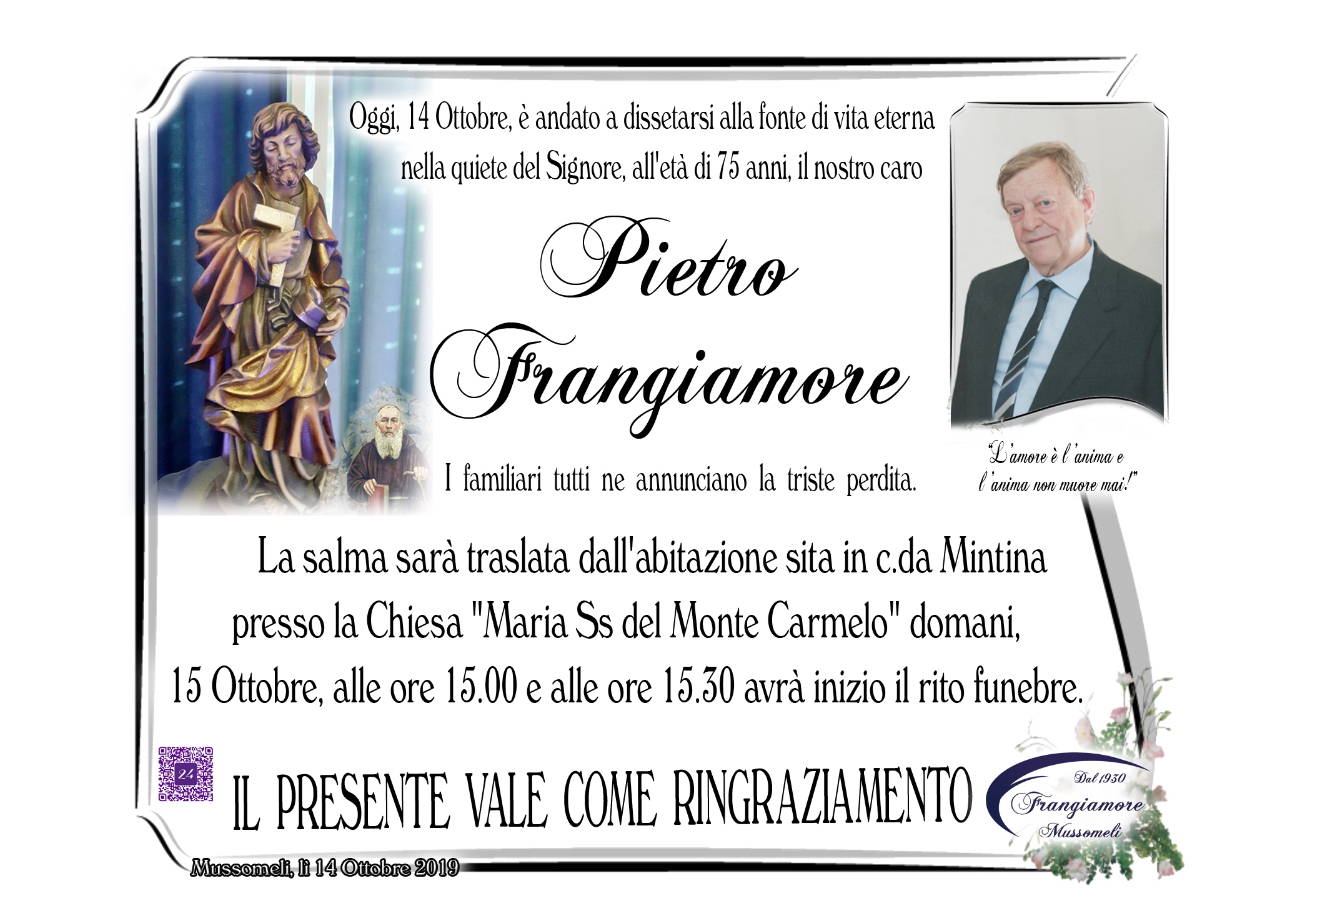 Pietro Frangiamore